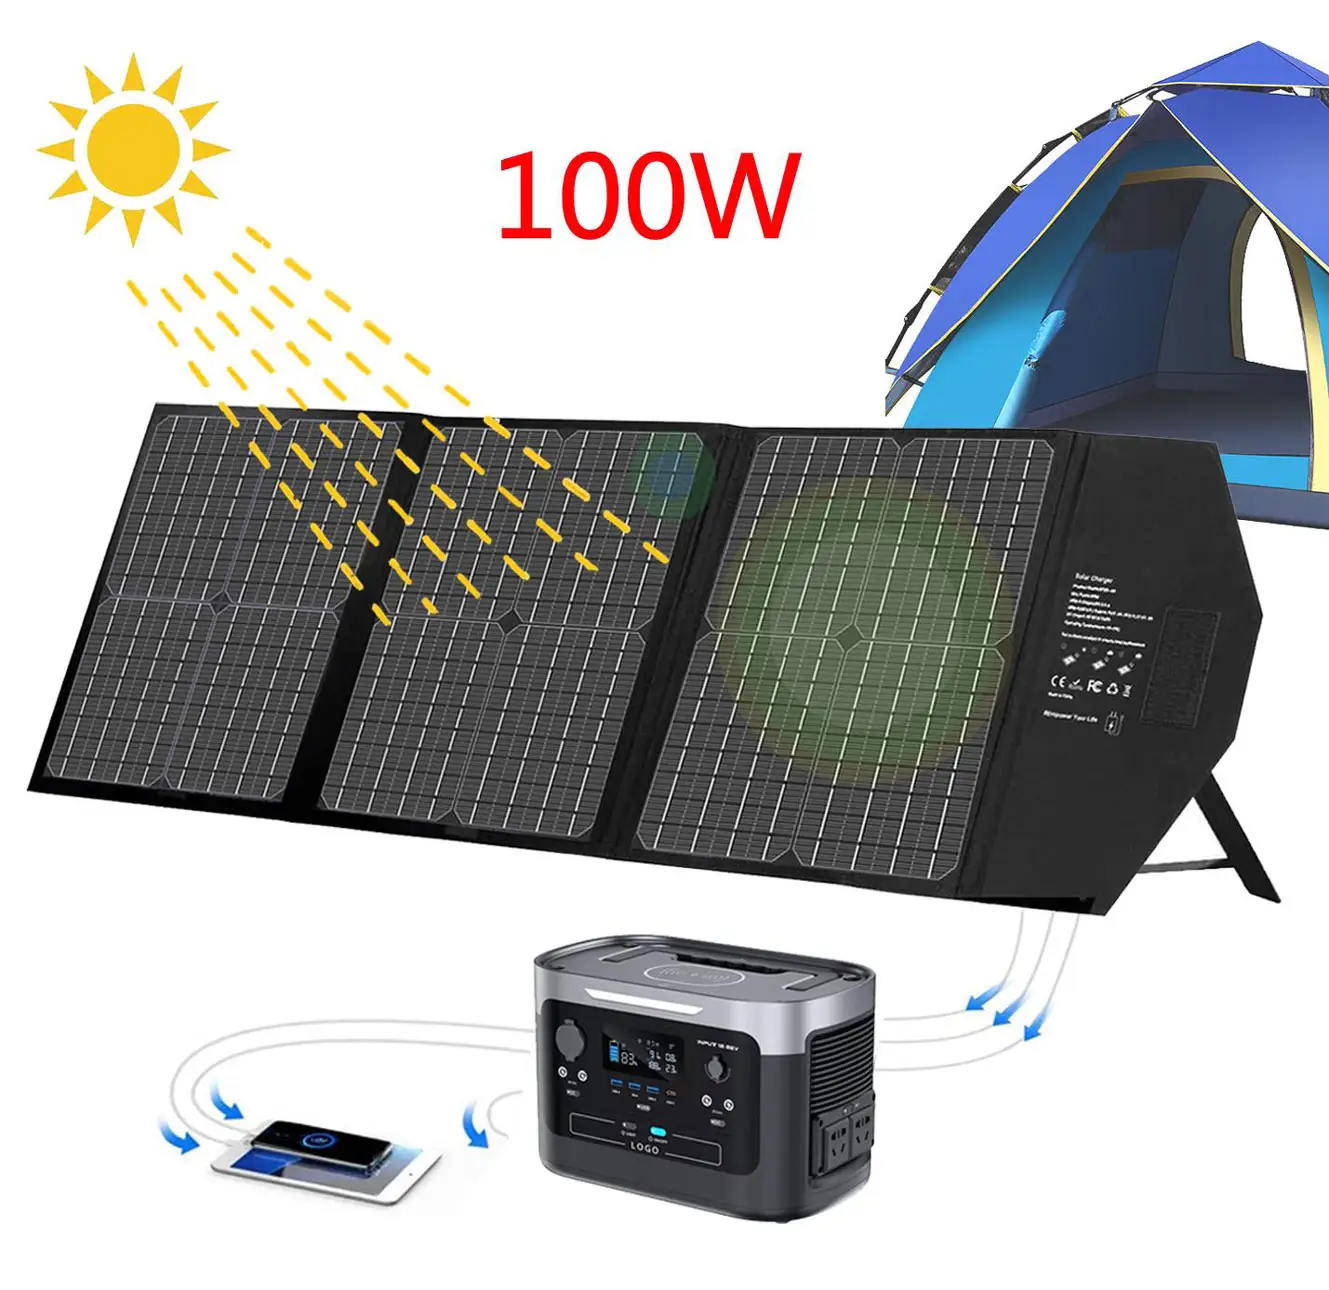 ポータブル100wワットETFEキックスタンドミニフレキシブル折りたたみ式システムホームキャンプ屋外用太陽光発電パネル充電器キット